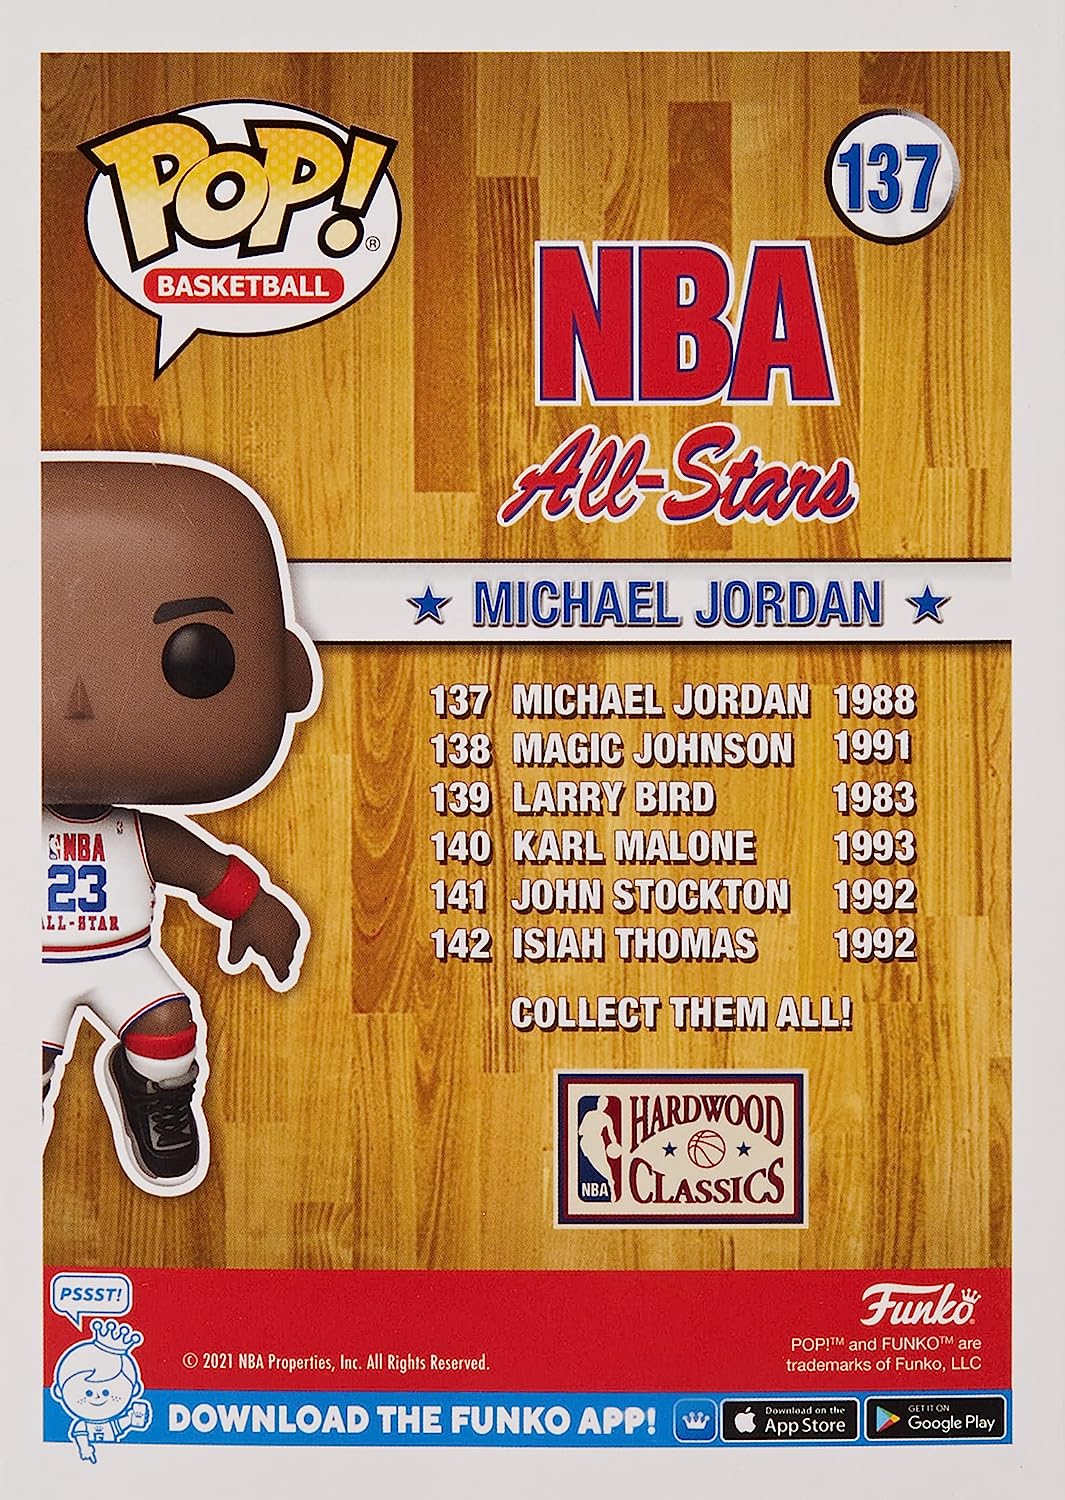 Фигурка Funko POP! NBA: Legends - Michael Jordan, 1988 All Star Game милн джордан бьяуго мартин меньше но лучше работать надо не 12 часов а головой